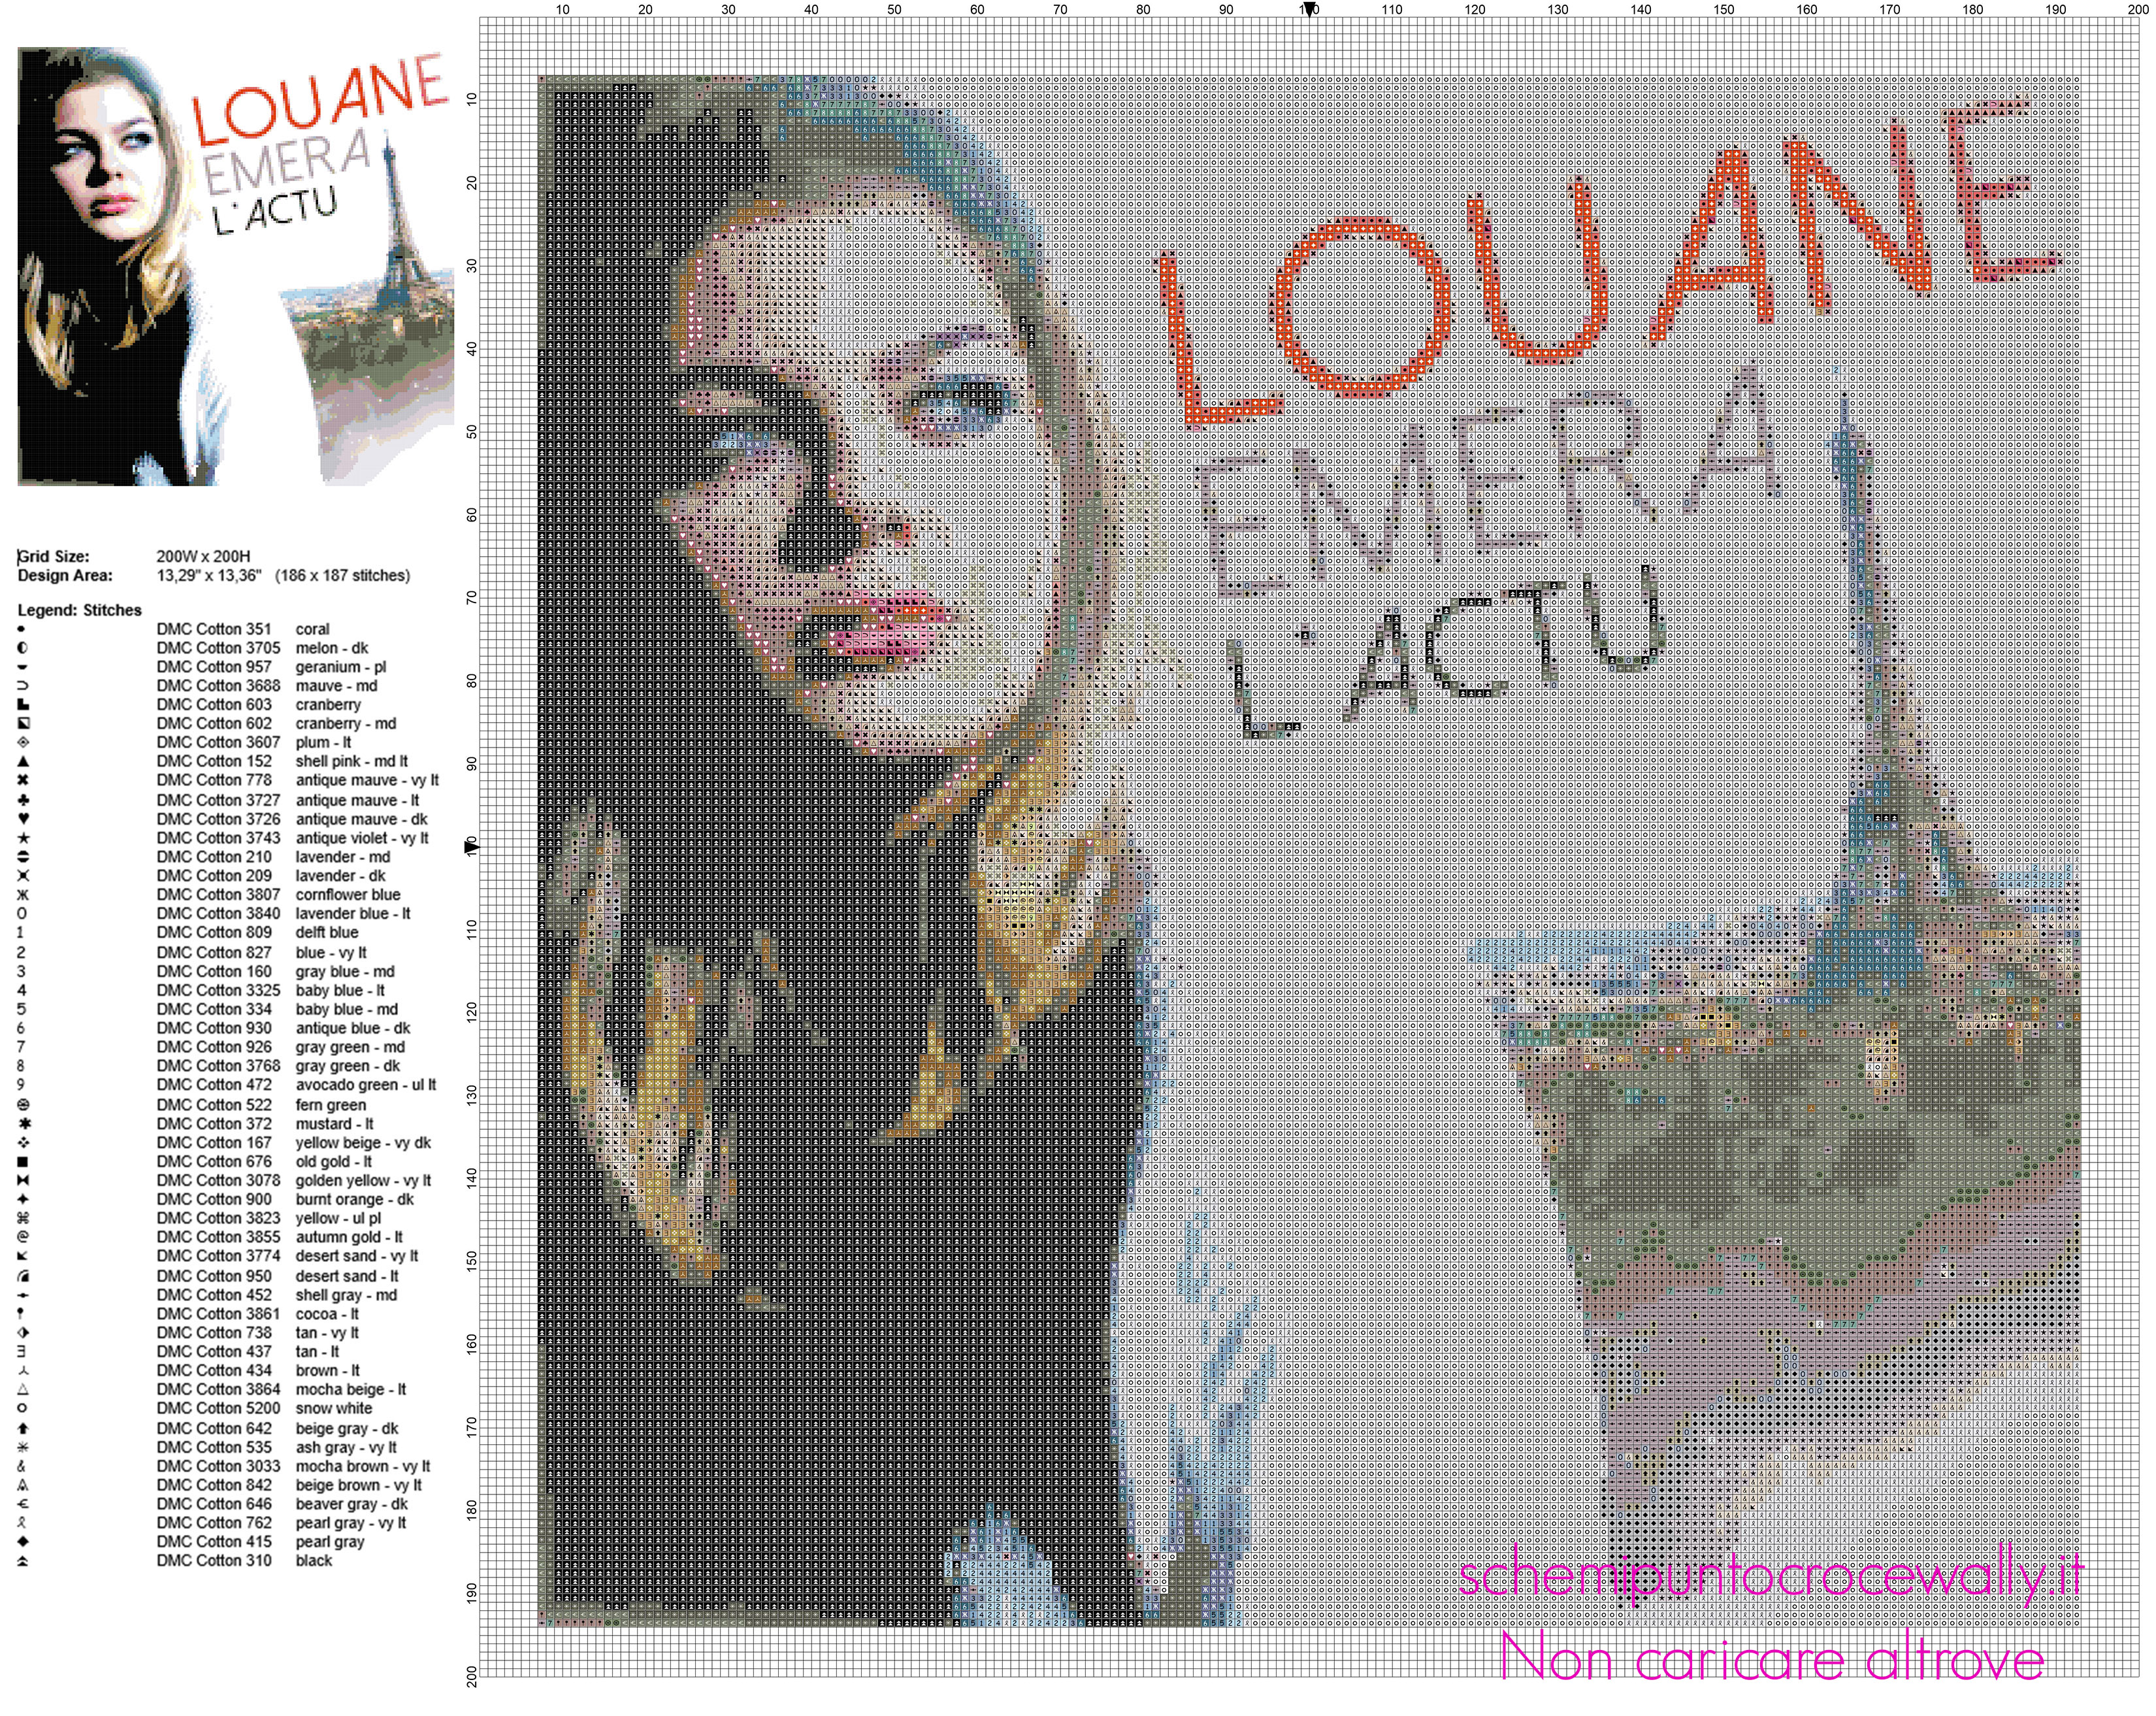 Louane Emera cantante e attrice francese schema punto croce 200 x 200 crocette 50 colori DMC